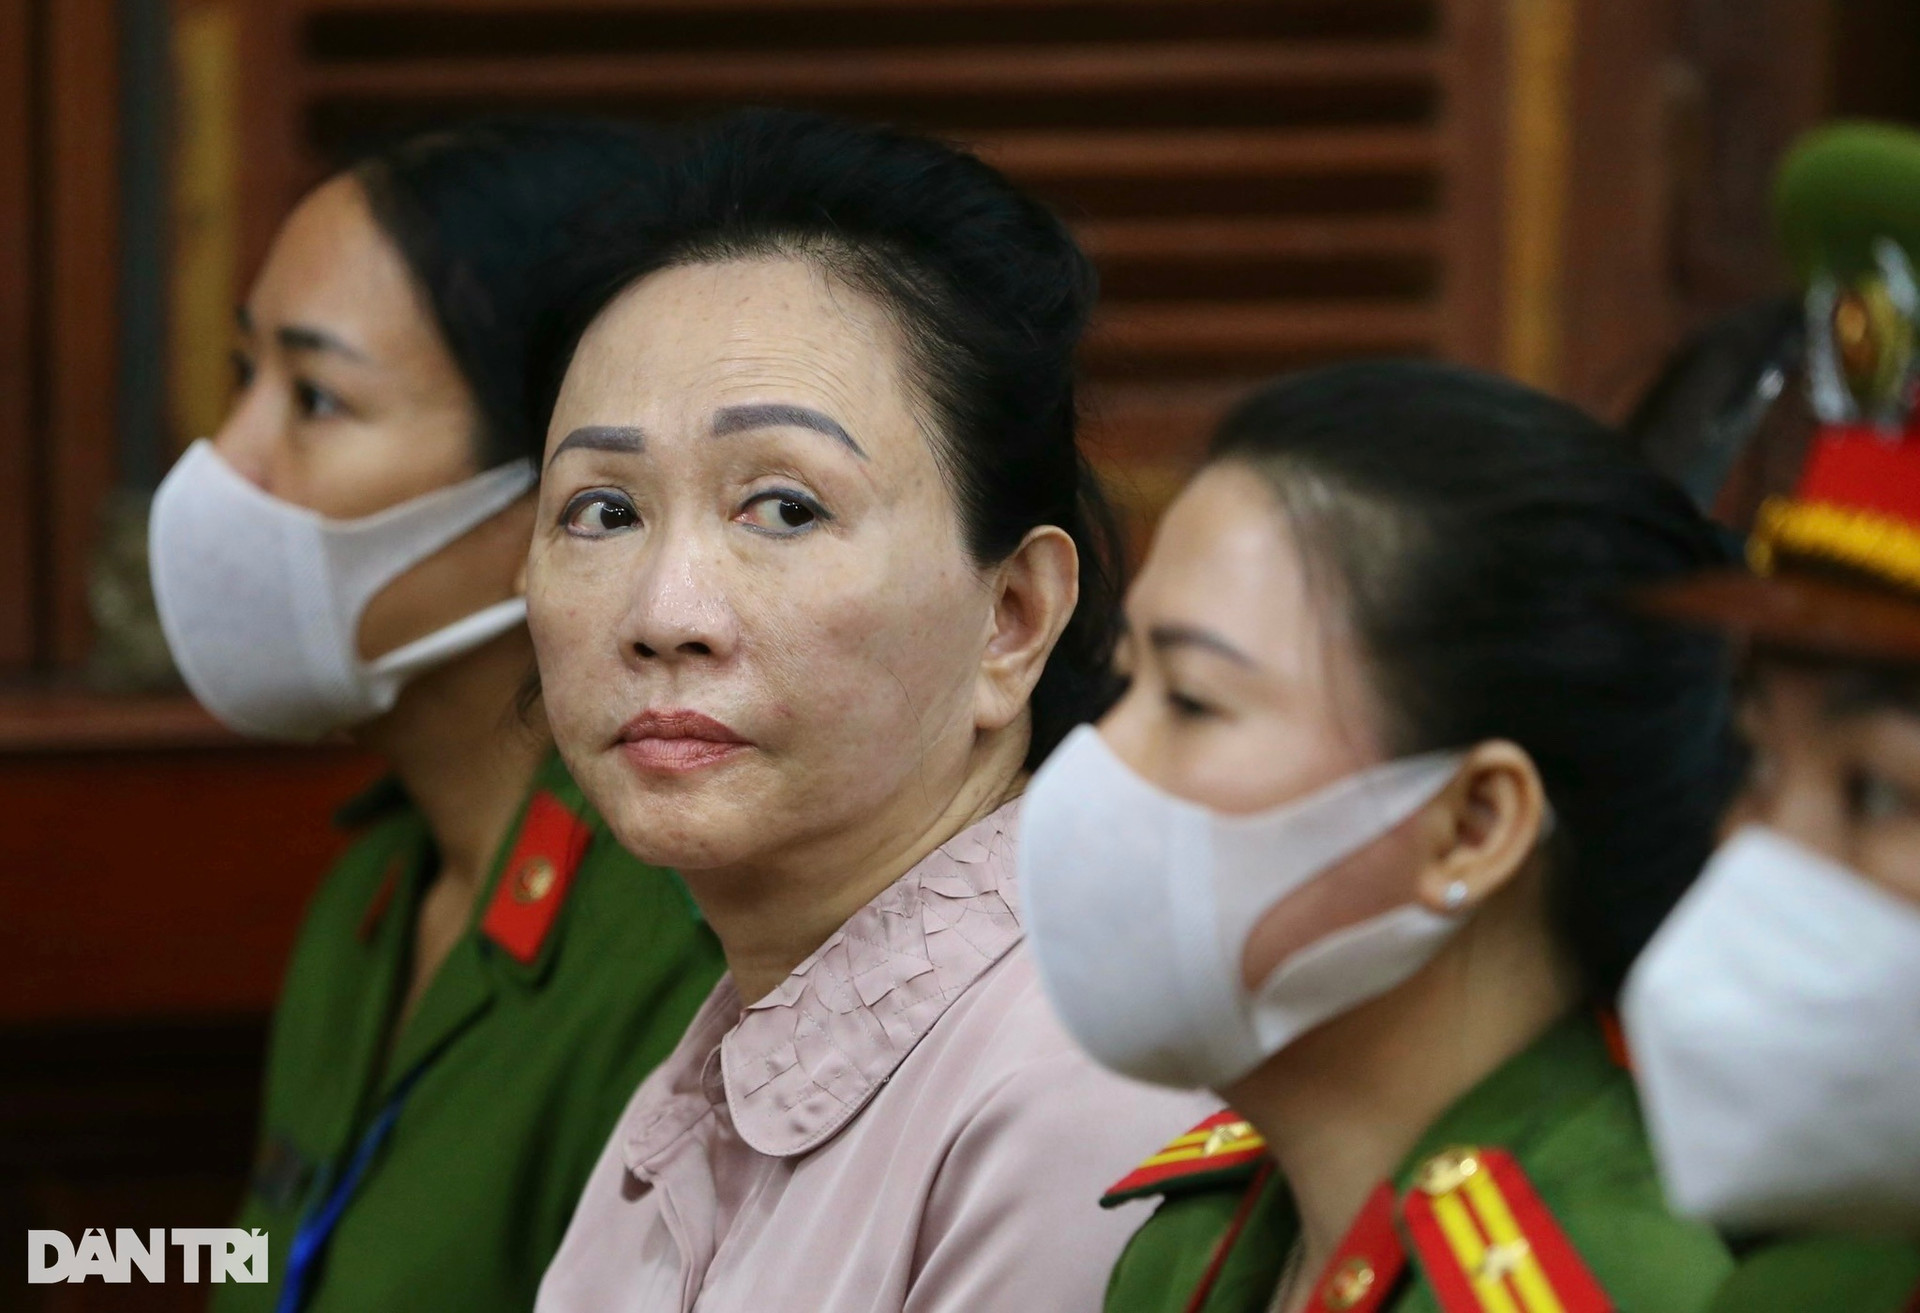 Bà Trương Mỹ Lan muốn chuyển 1.000 tỷ đồng của Nguyễn Cao Trí sang SCB - 1